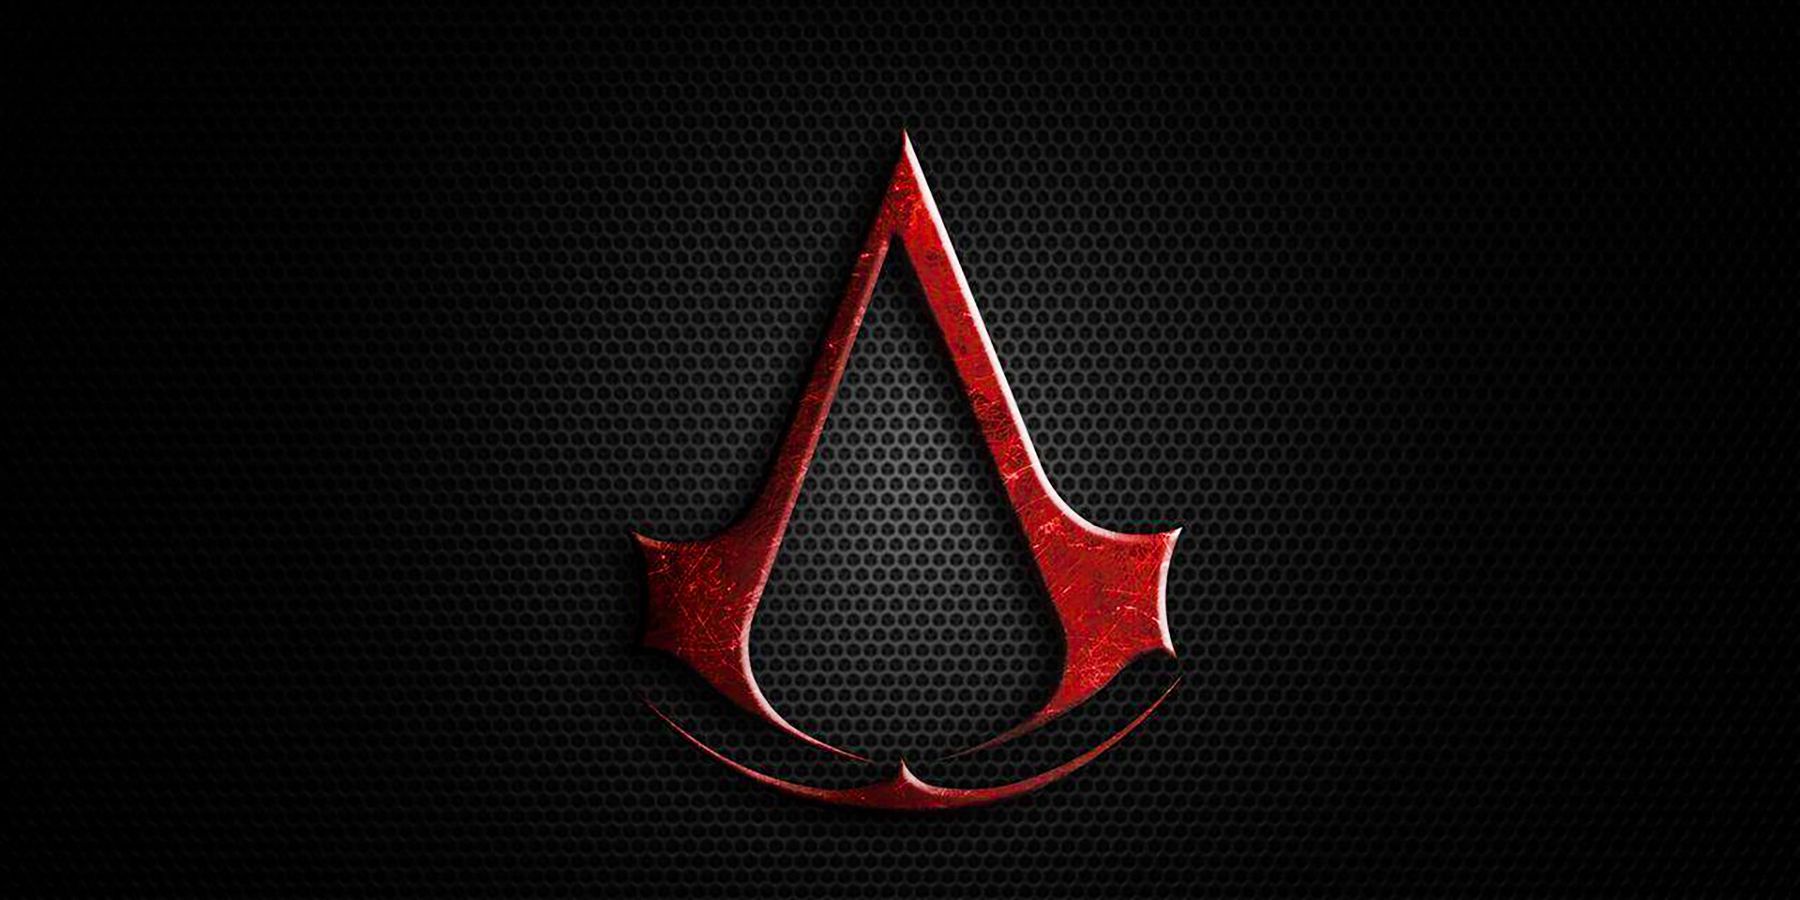 Uuden Assassin’s Creed -pelin asetus mahdollisesti vuotanut